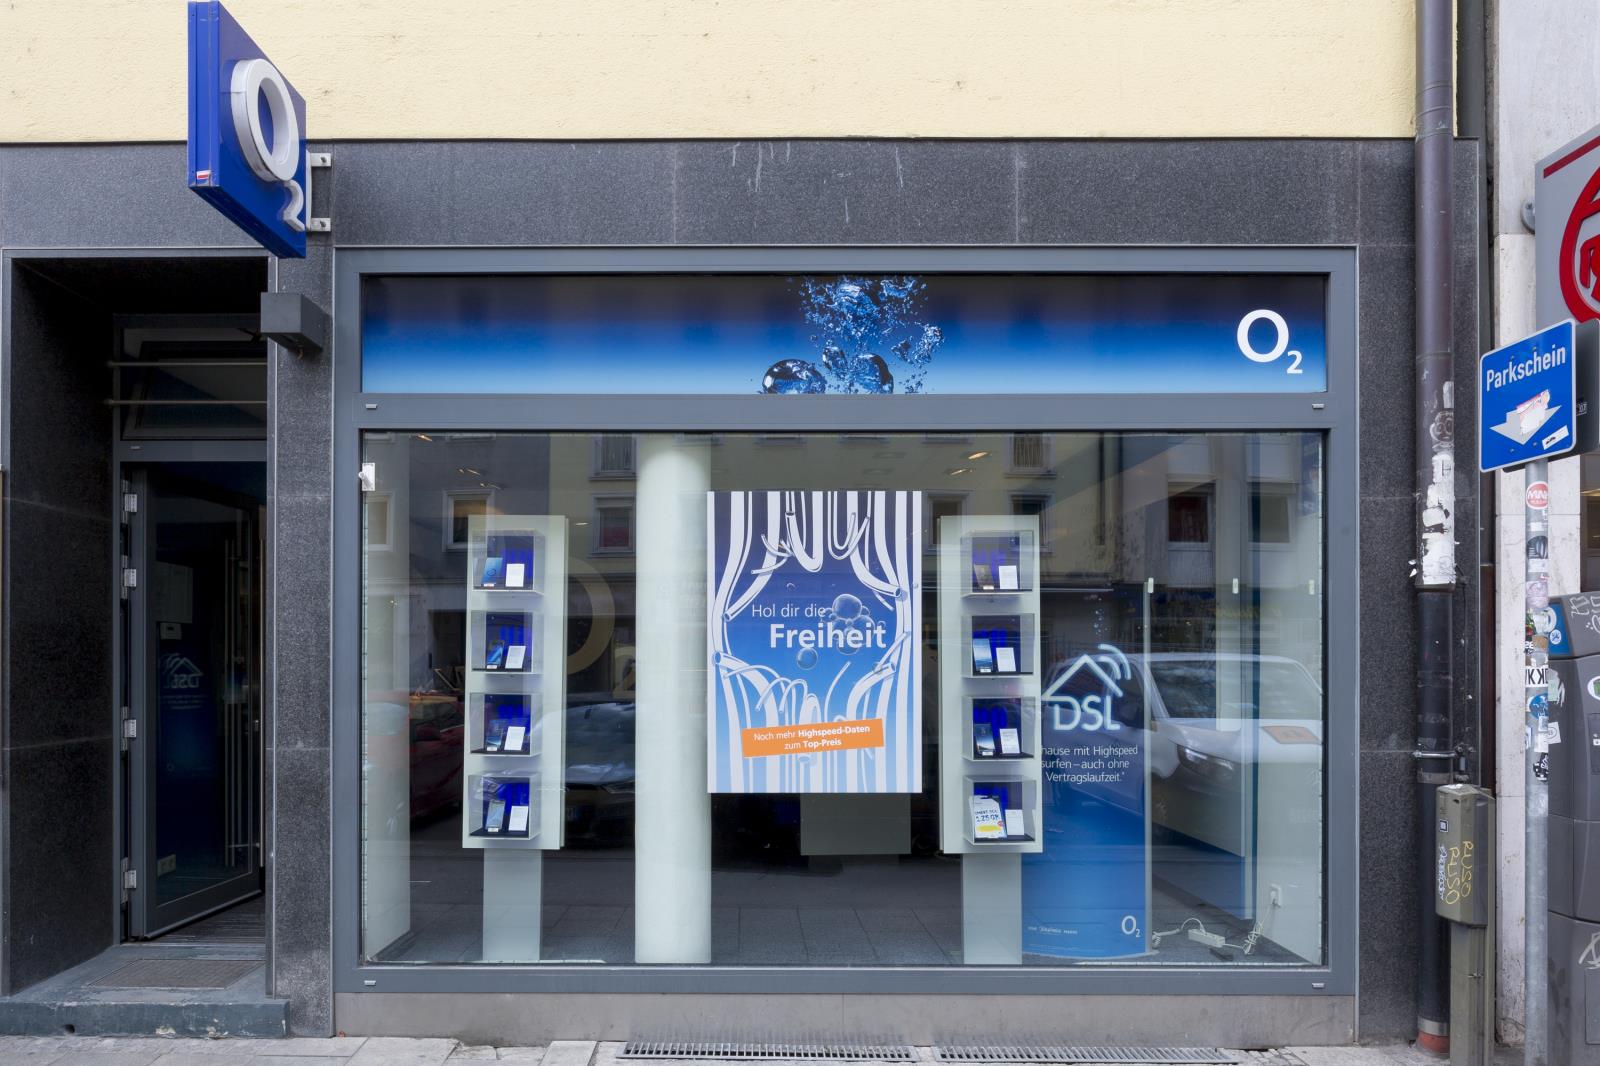 o2 Shop, Augustenstr. 77 in München